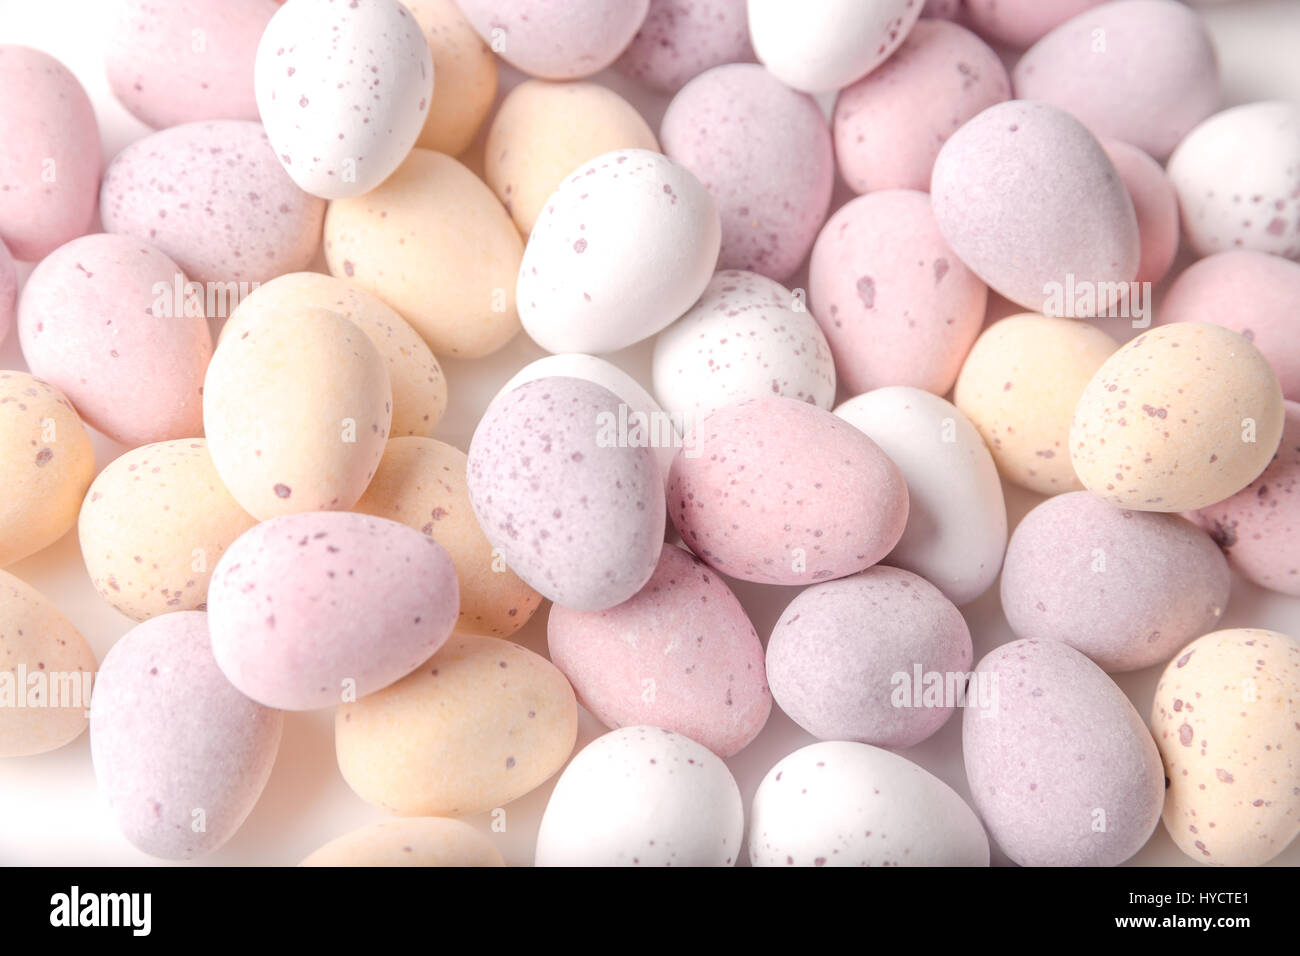 Eine Auswahl von Mini Schokoladeneier mit harter Schale Stockfotografie ...